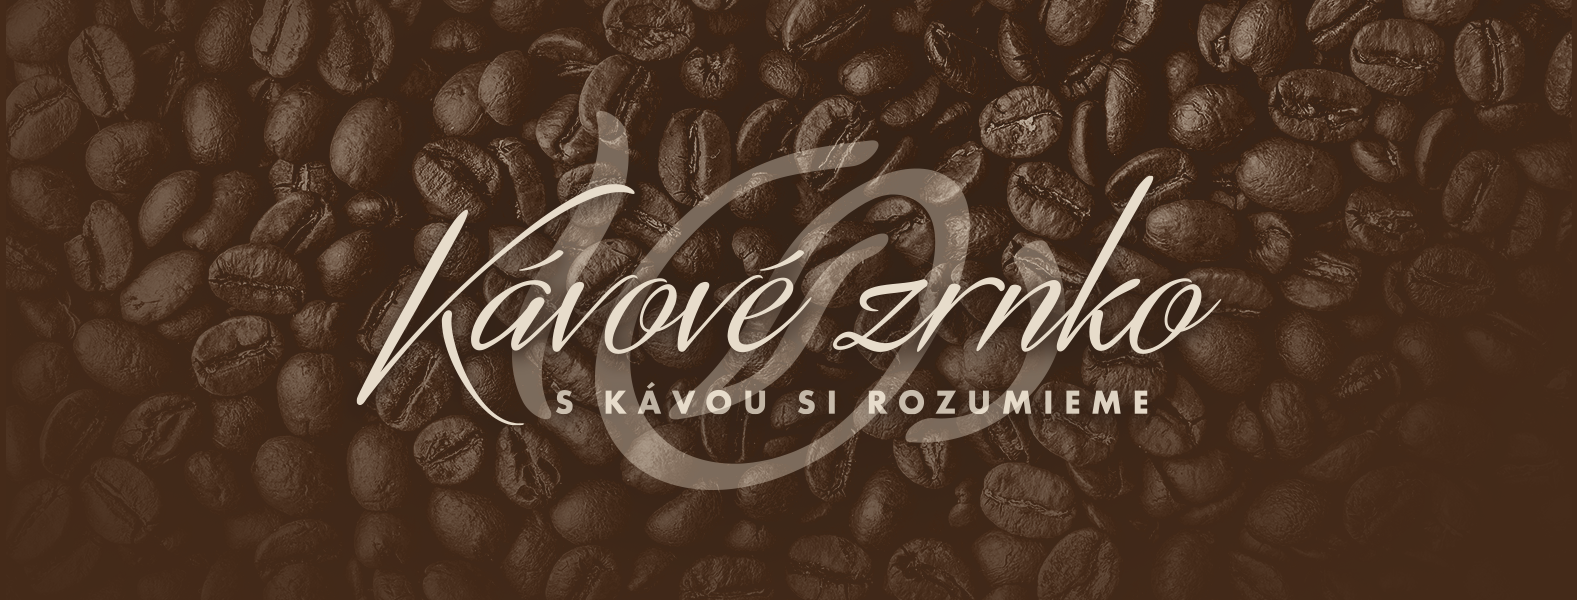 Presmerovanie na náš E-shop s kávou KavoveZrnko.sk